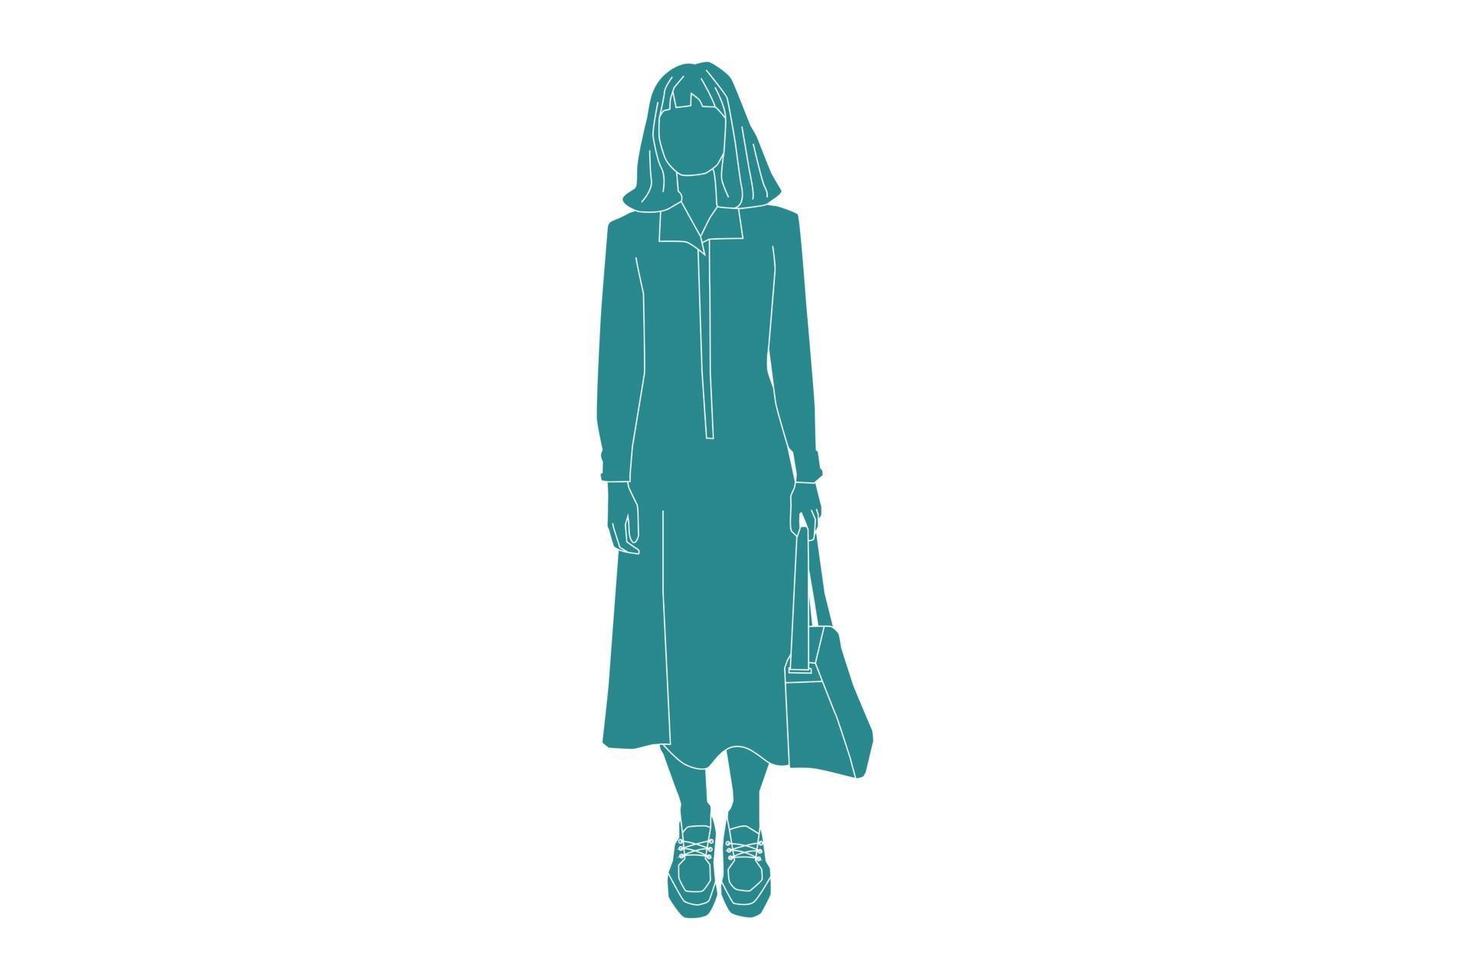 Vektor-Illustration der lässigen Frau stehend, flacher Stil mit Umriss vektor